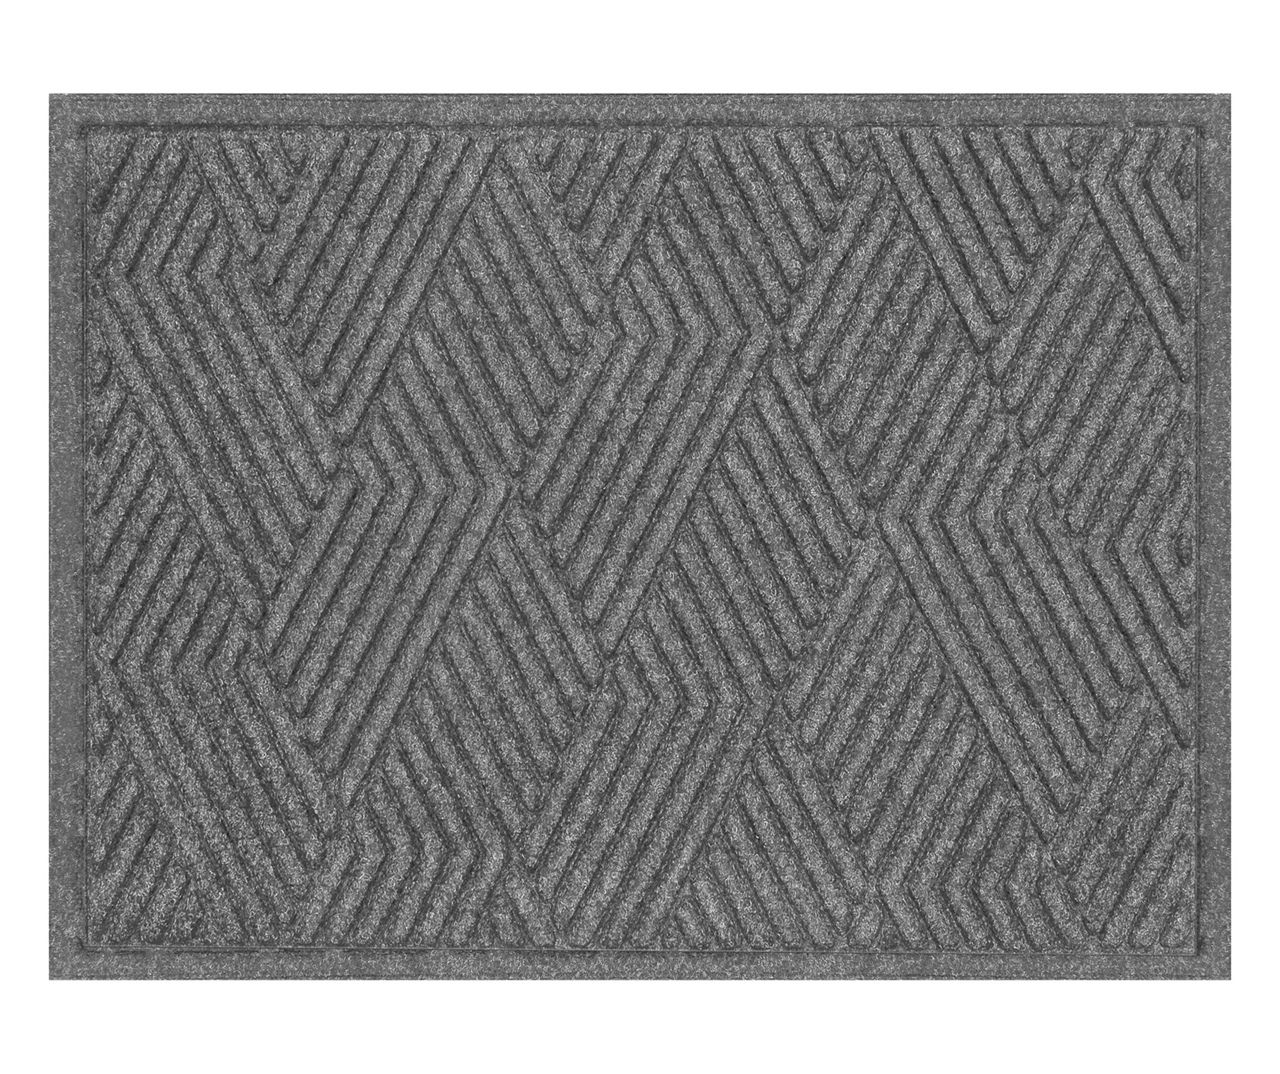 Vanguard Smoke Geometric Texture Doormat, (18" x 24")